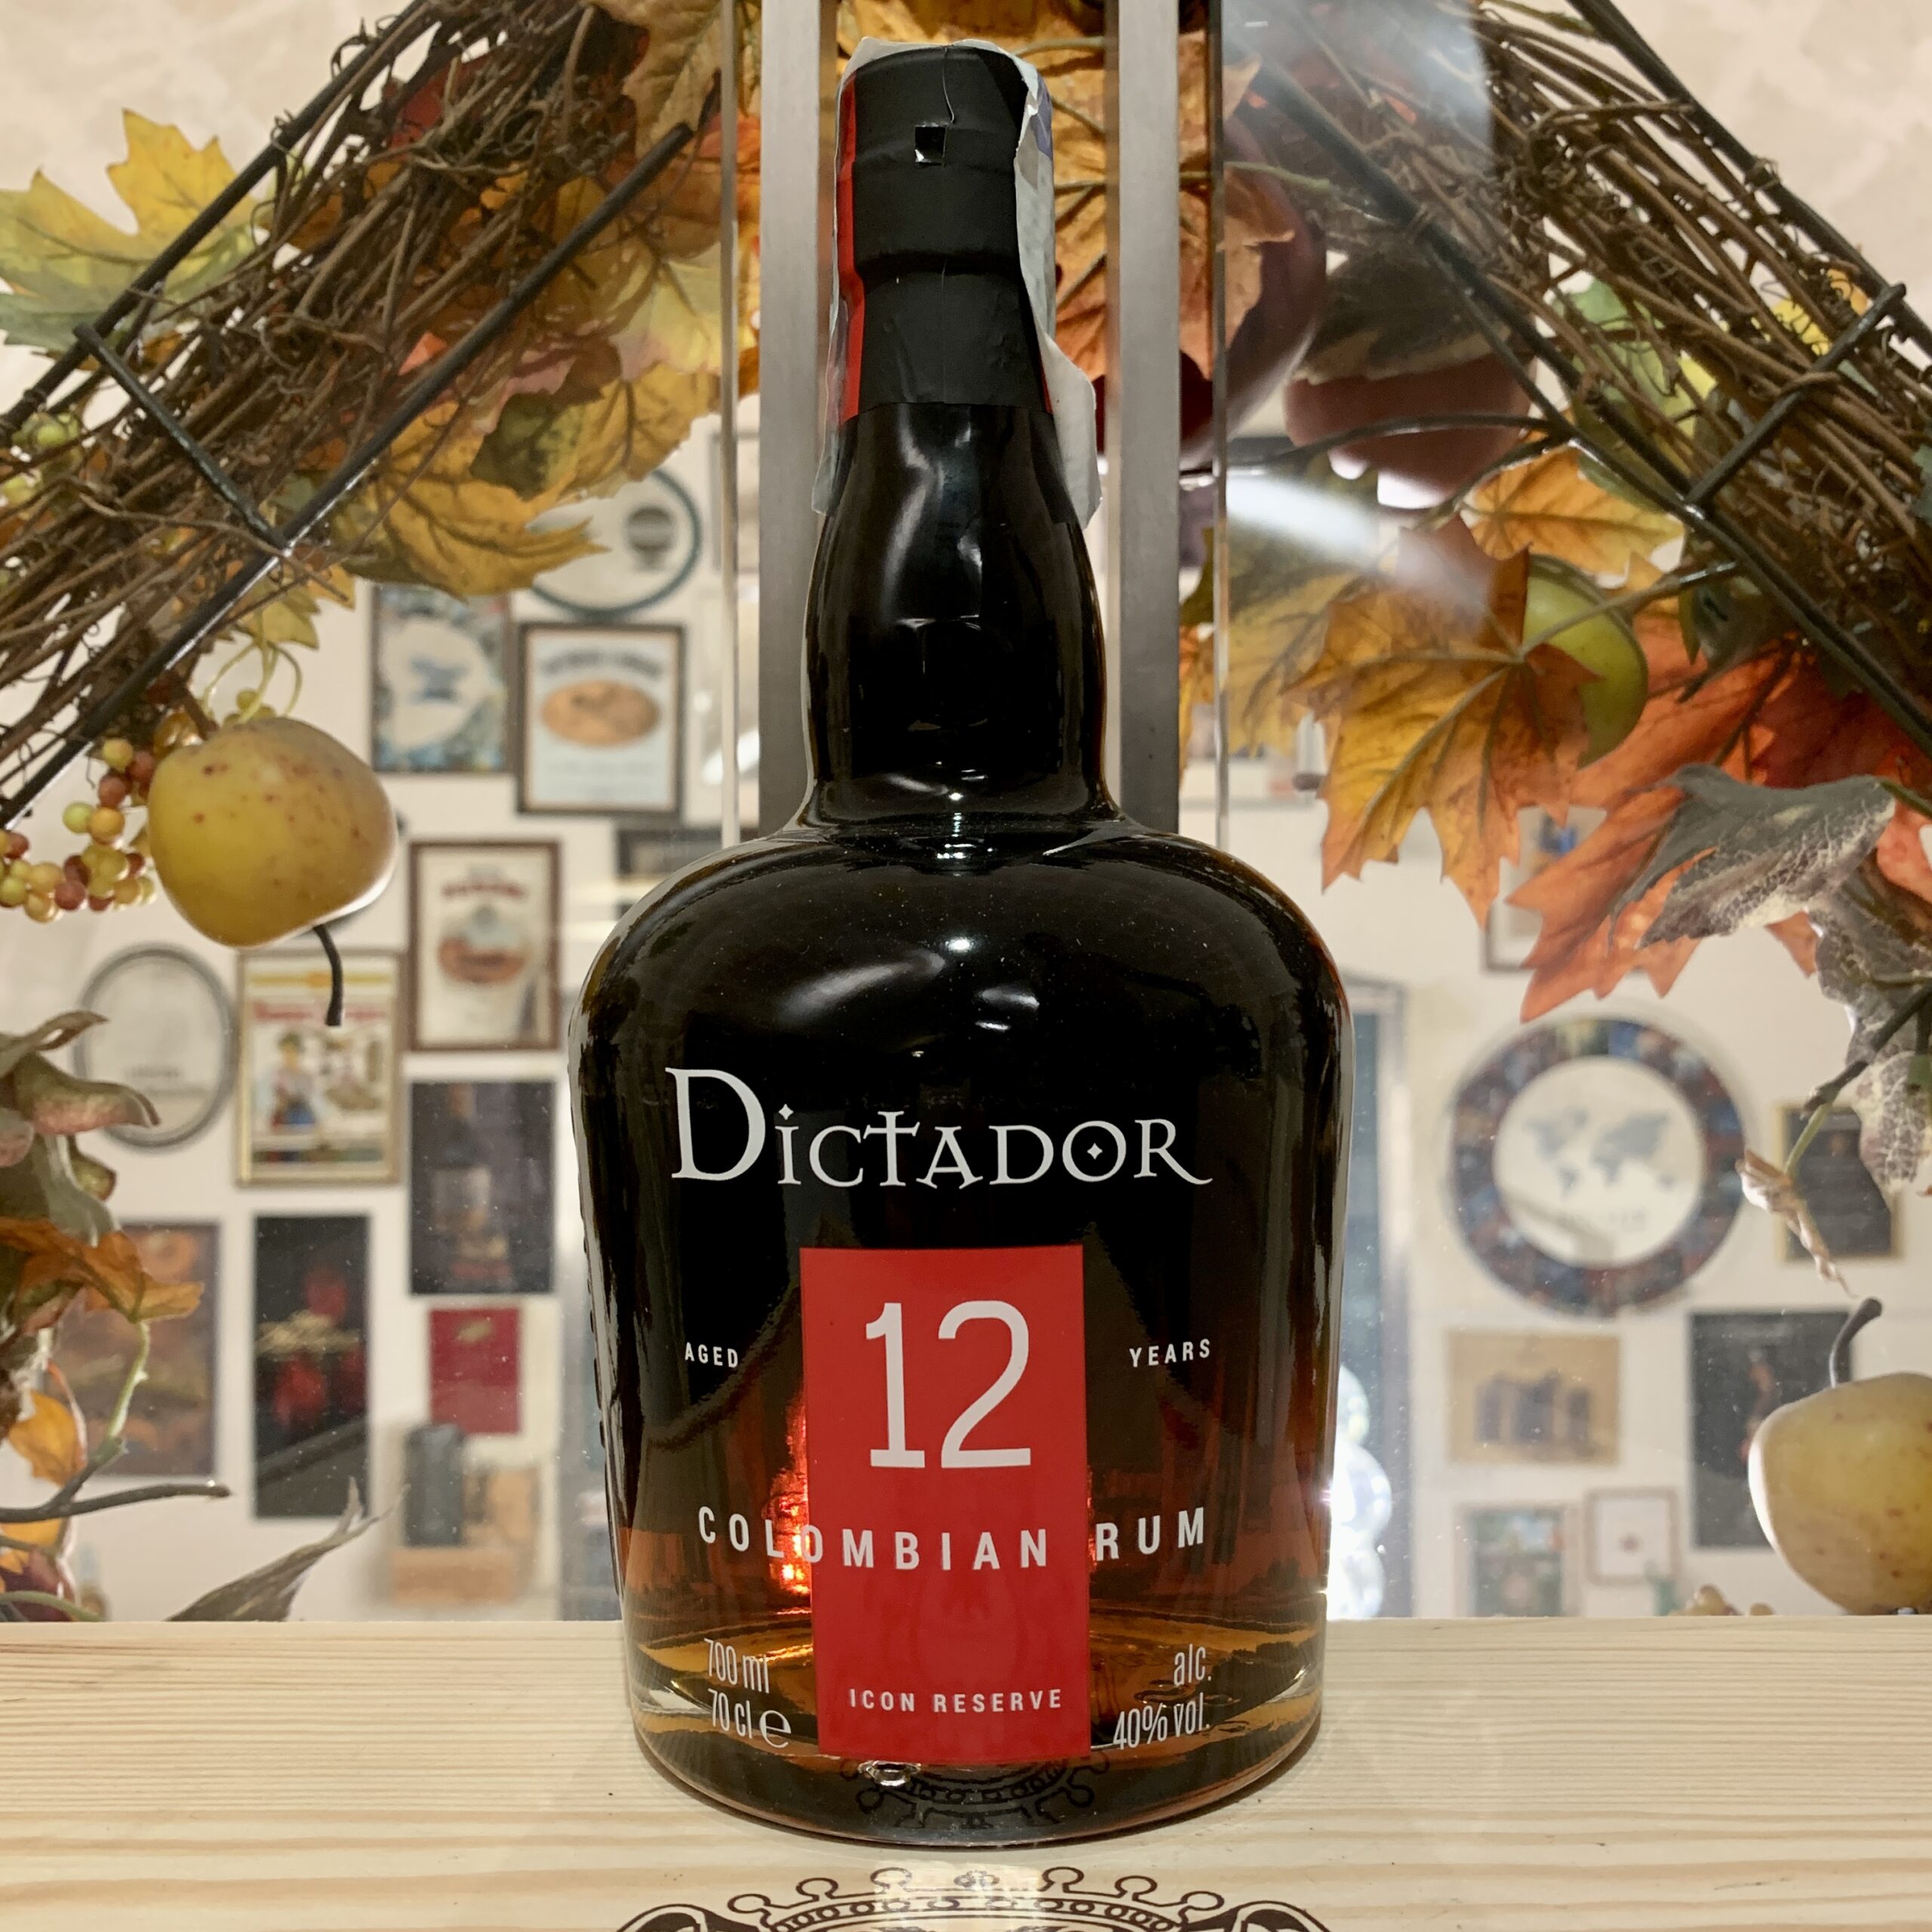 Dictador Colombian Rum 12 YO